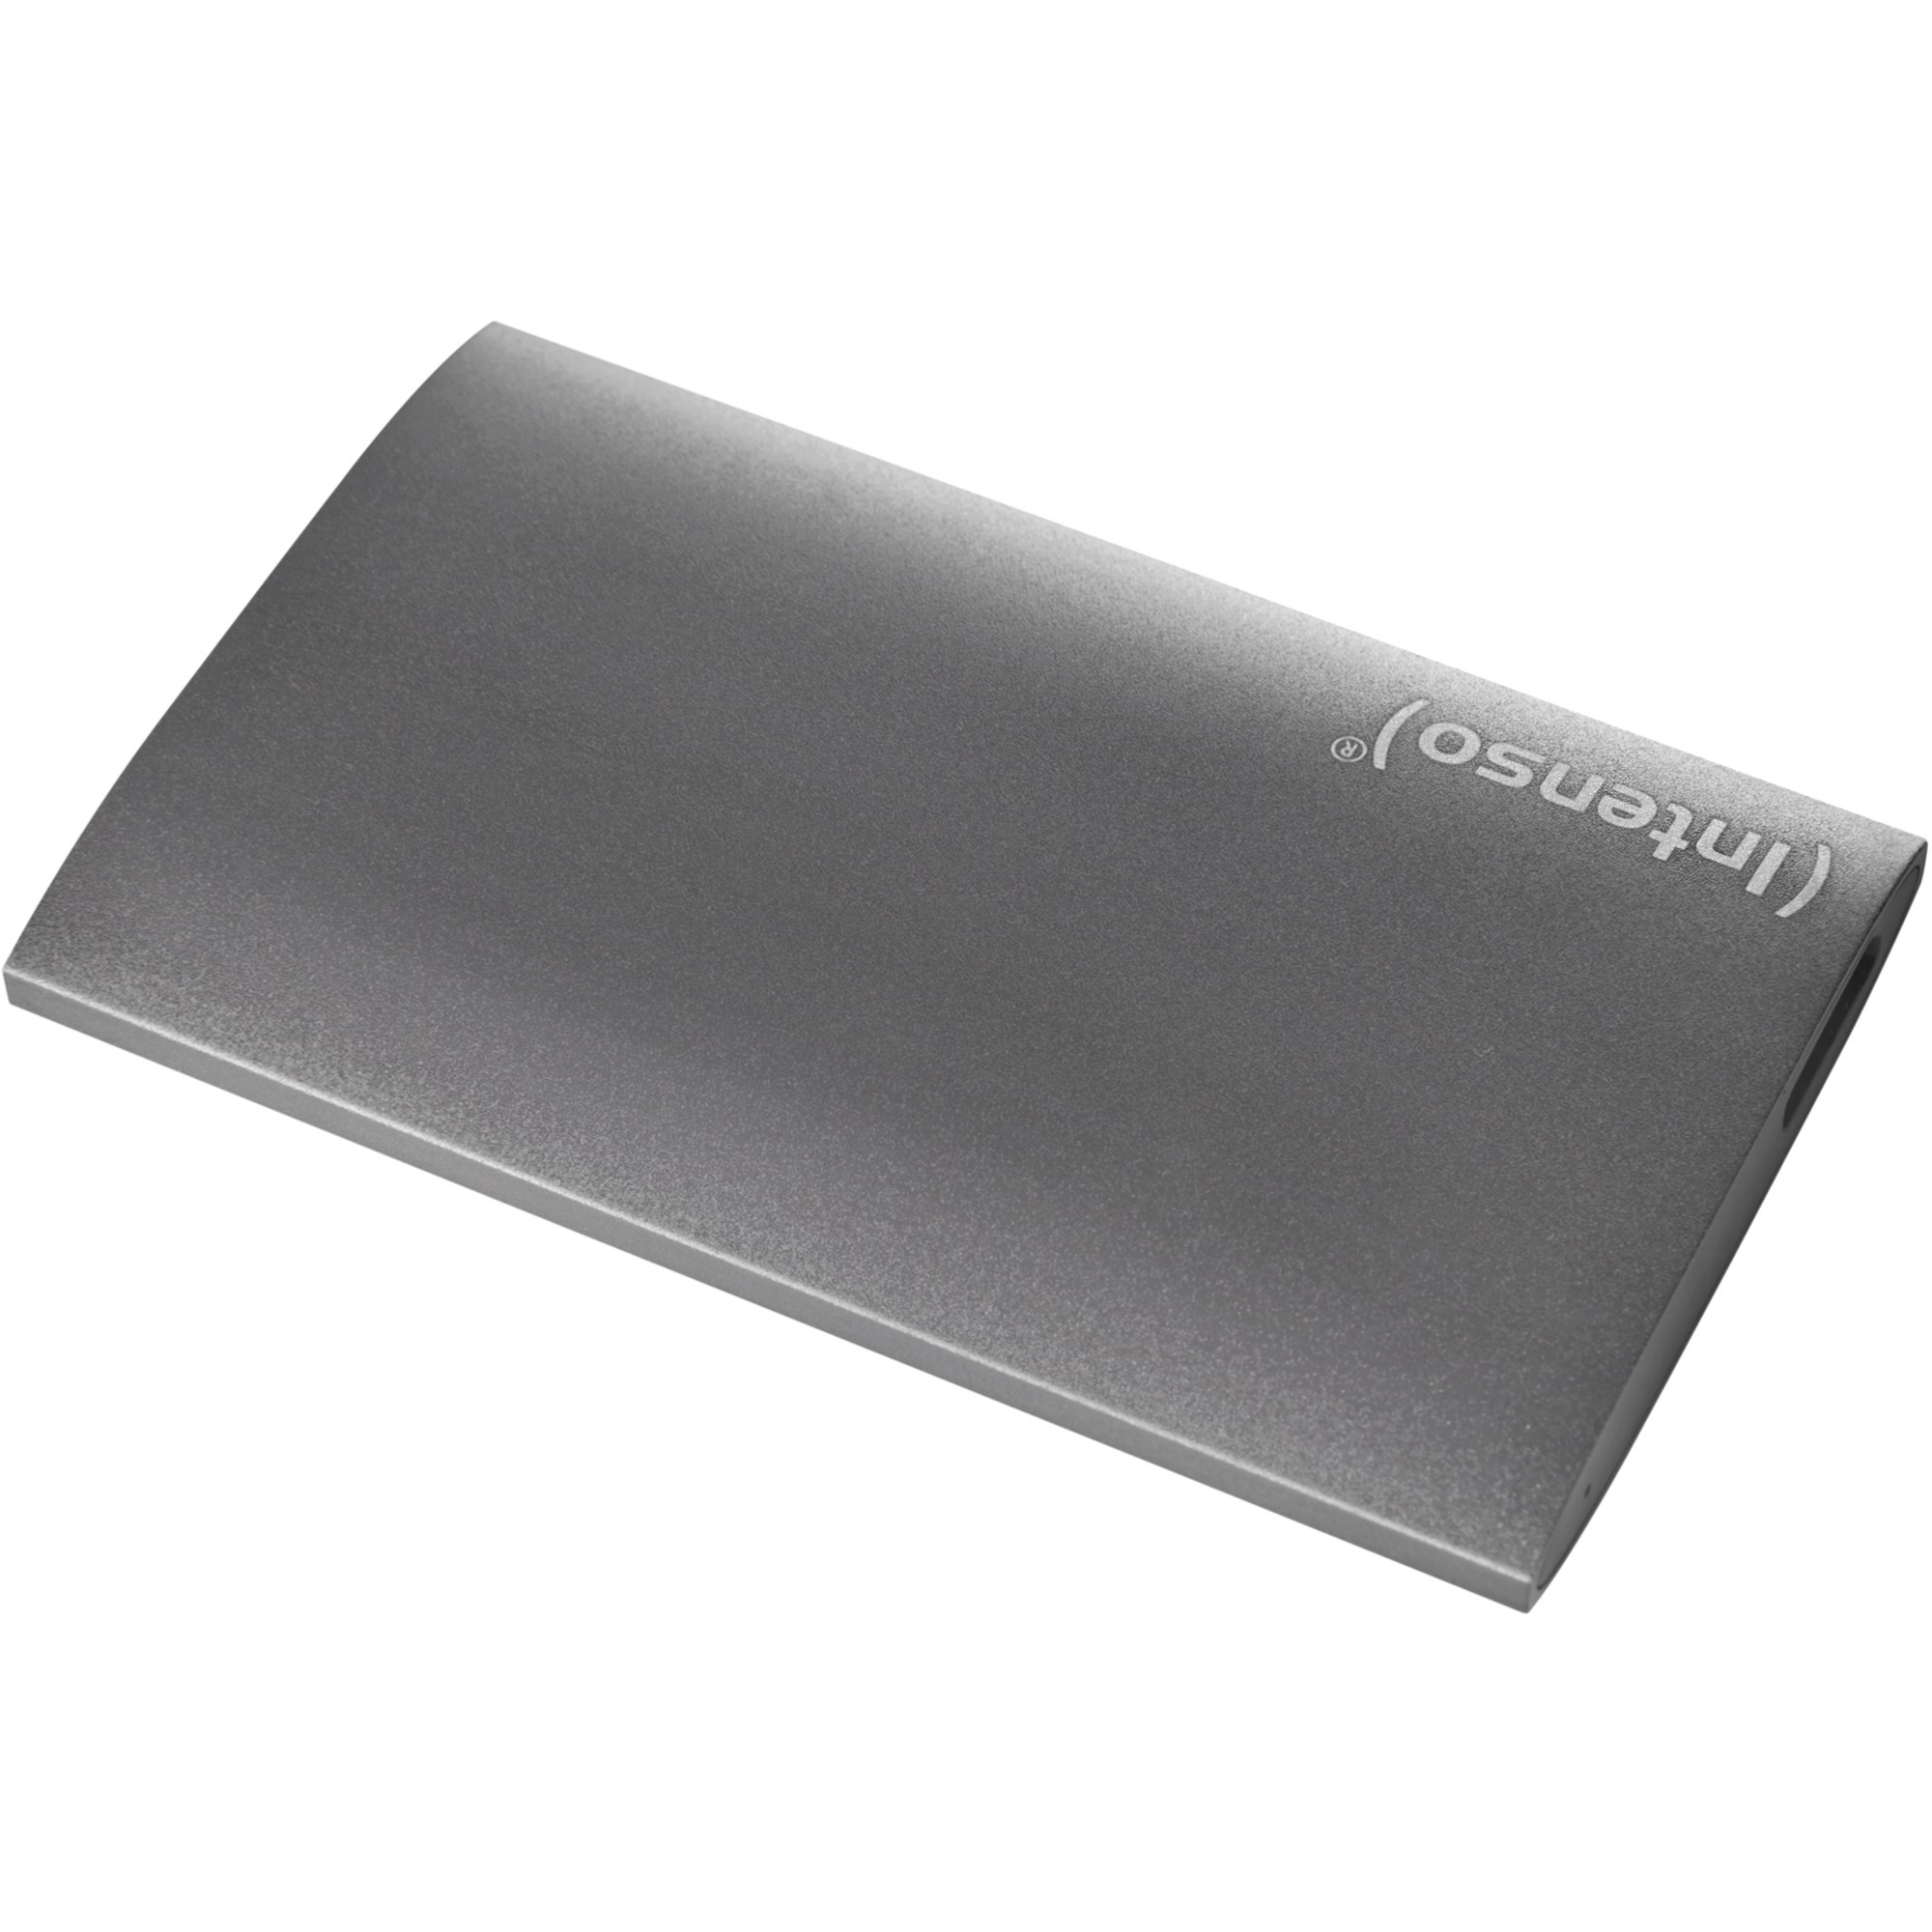 Image of Alternate - Portable SSD Premium 128 GB, Externe SSD online einkaufen bei Alternate